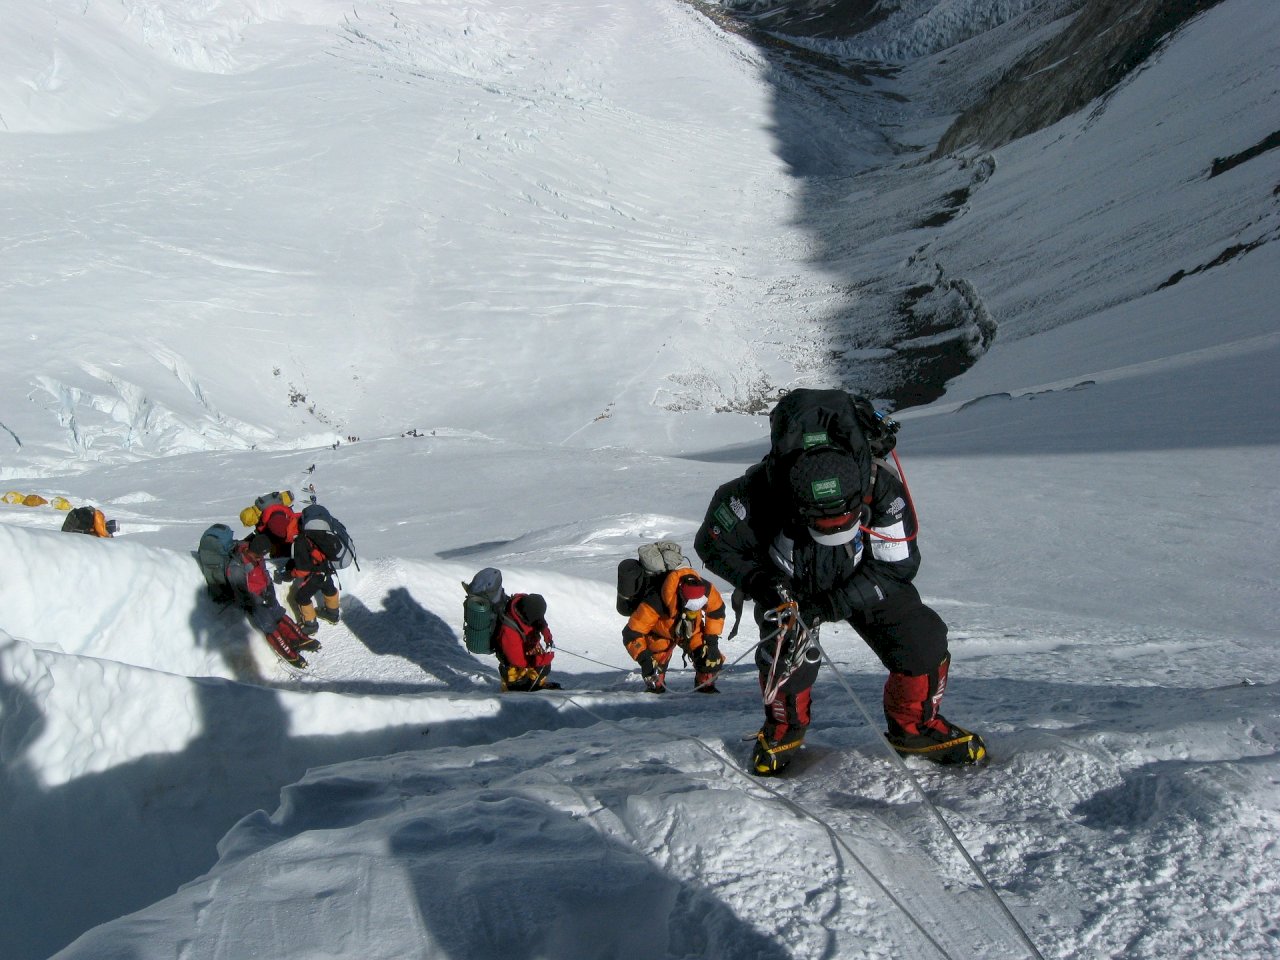 聖母峰攻頂塞車一週釀7死 登山客等太久失溫缺氧